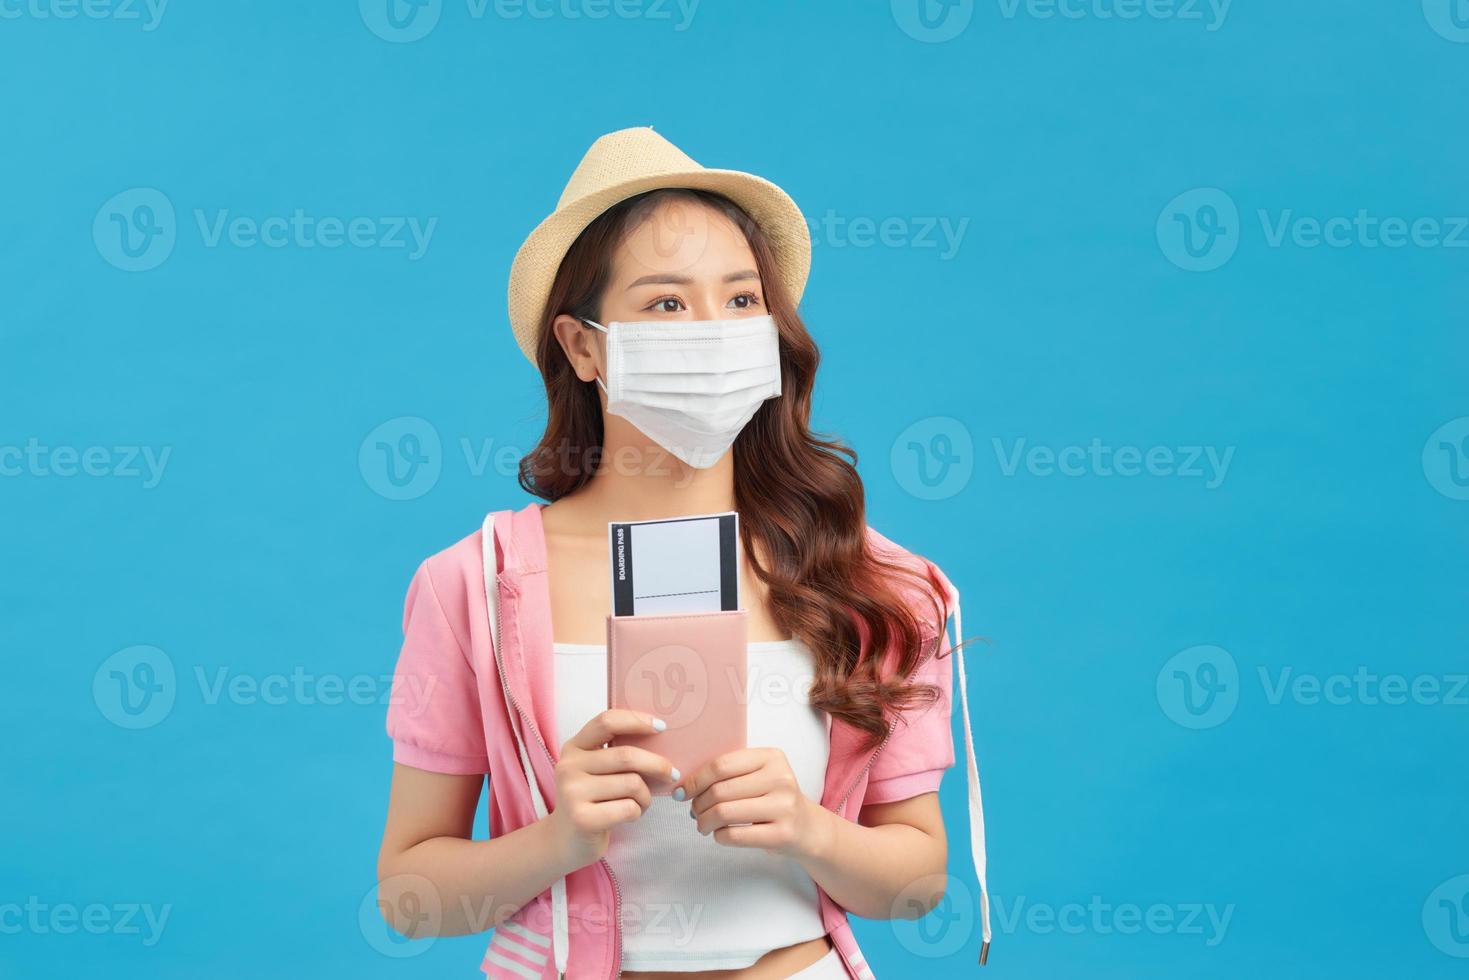 eine reisende in einer medizinischen schutzmaske im gesicht foto